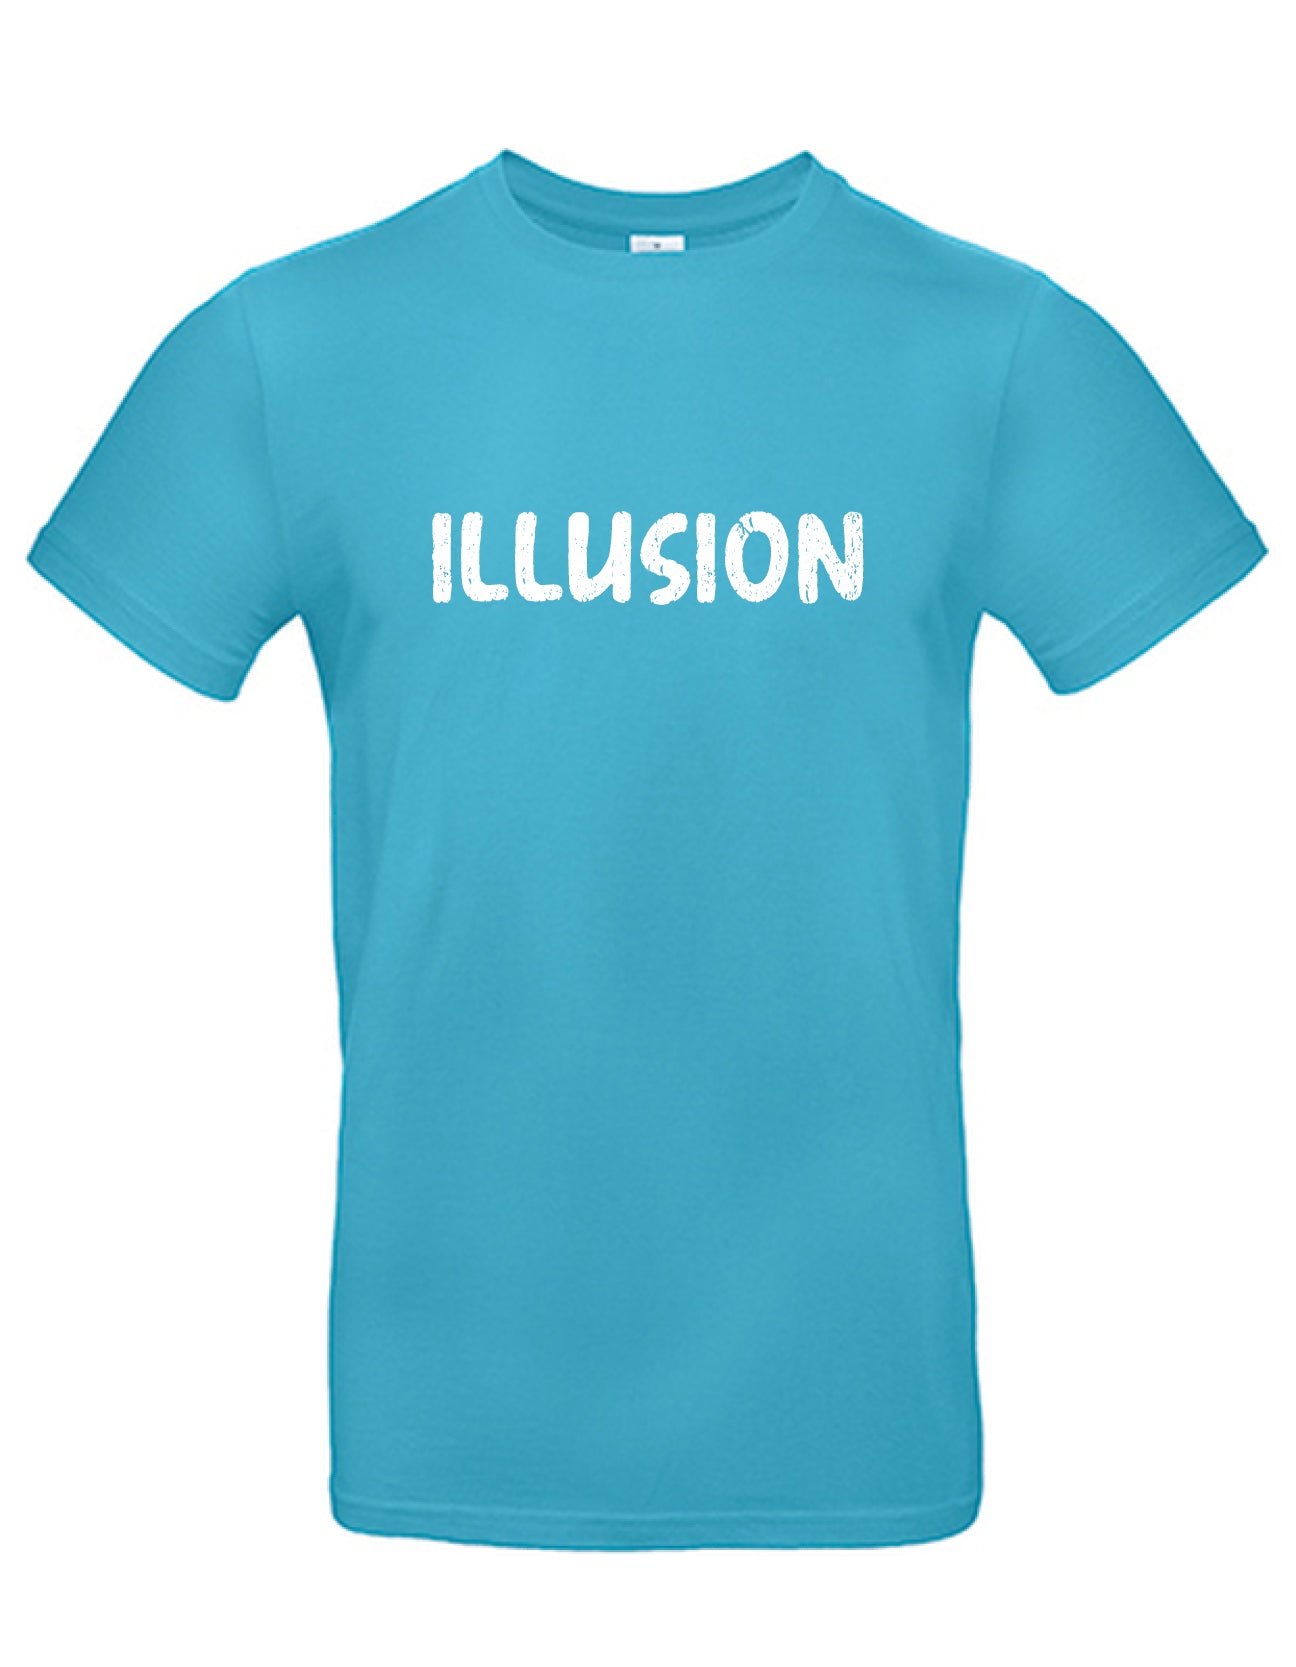 T-Shirt Männer >> ILLUSION